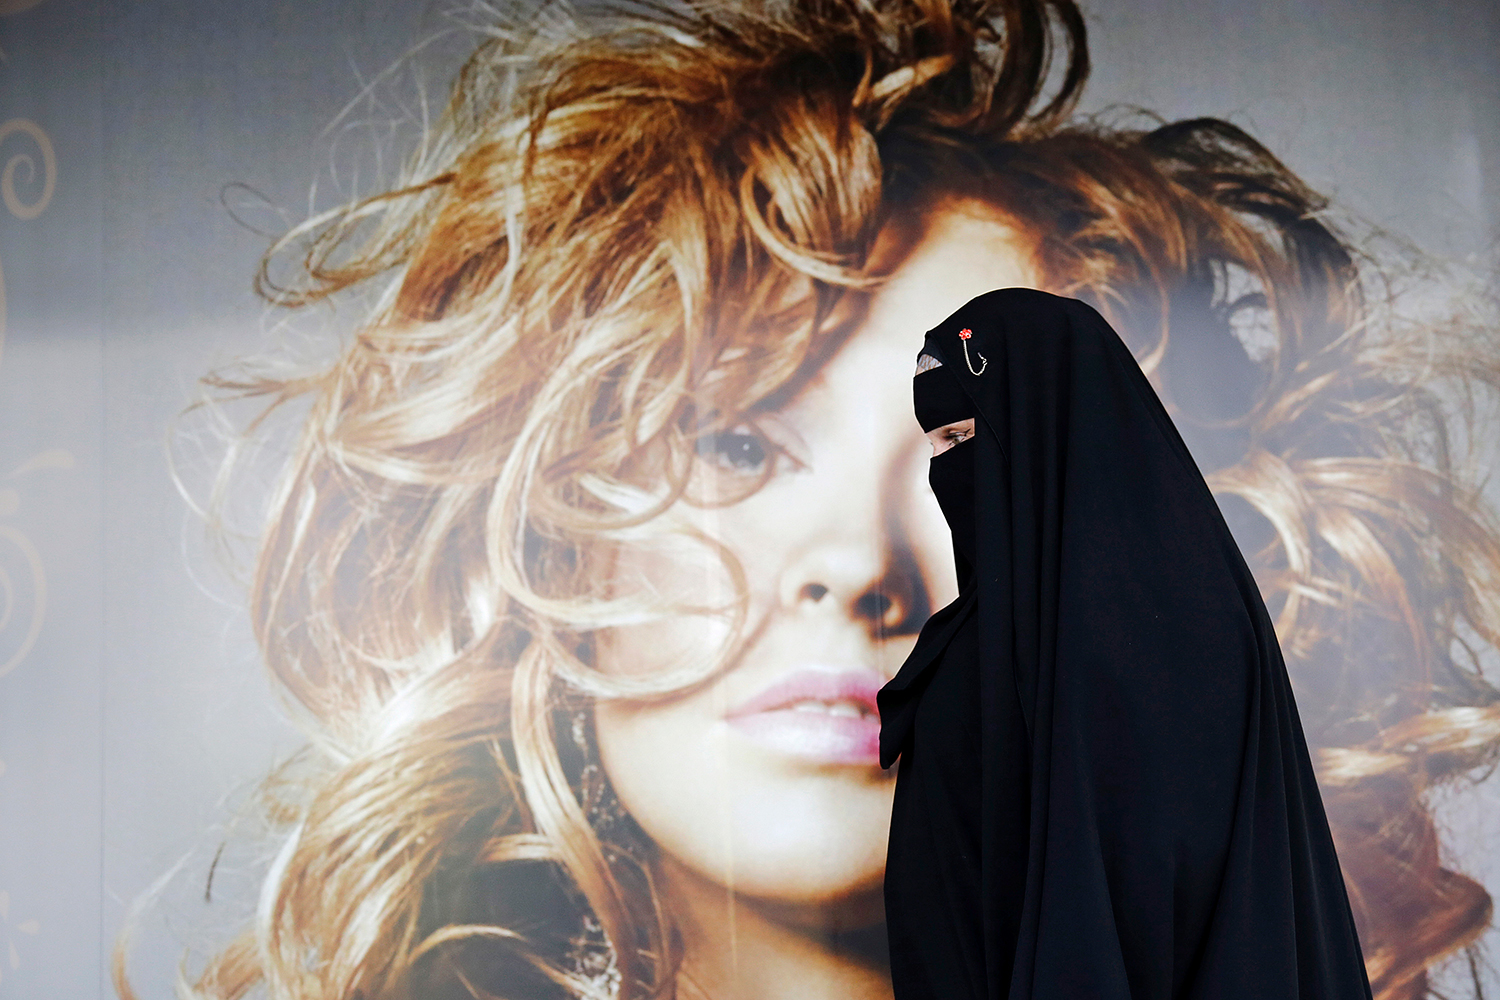 Un ‘terrorista suicida’ vestido con un burka, resulta ser un amante disfrazado